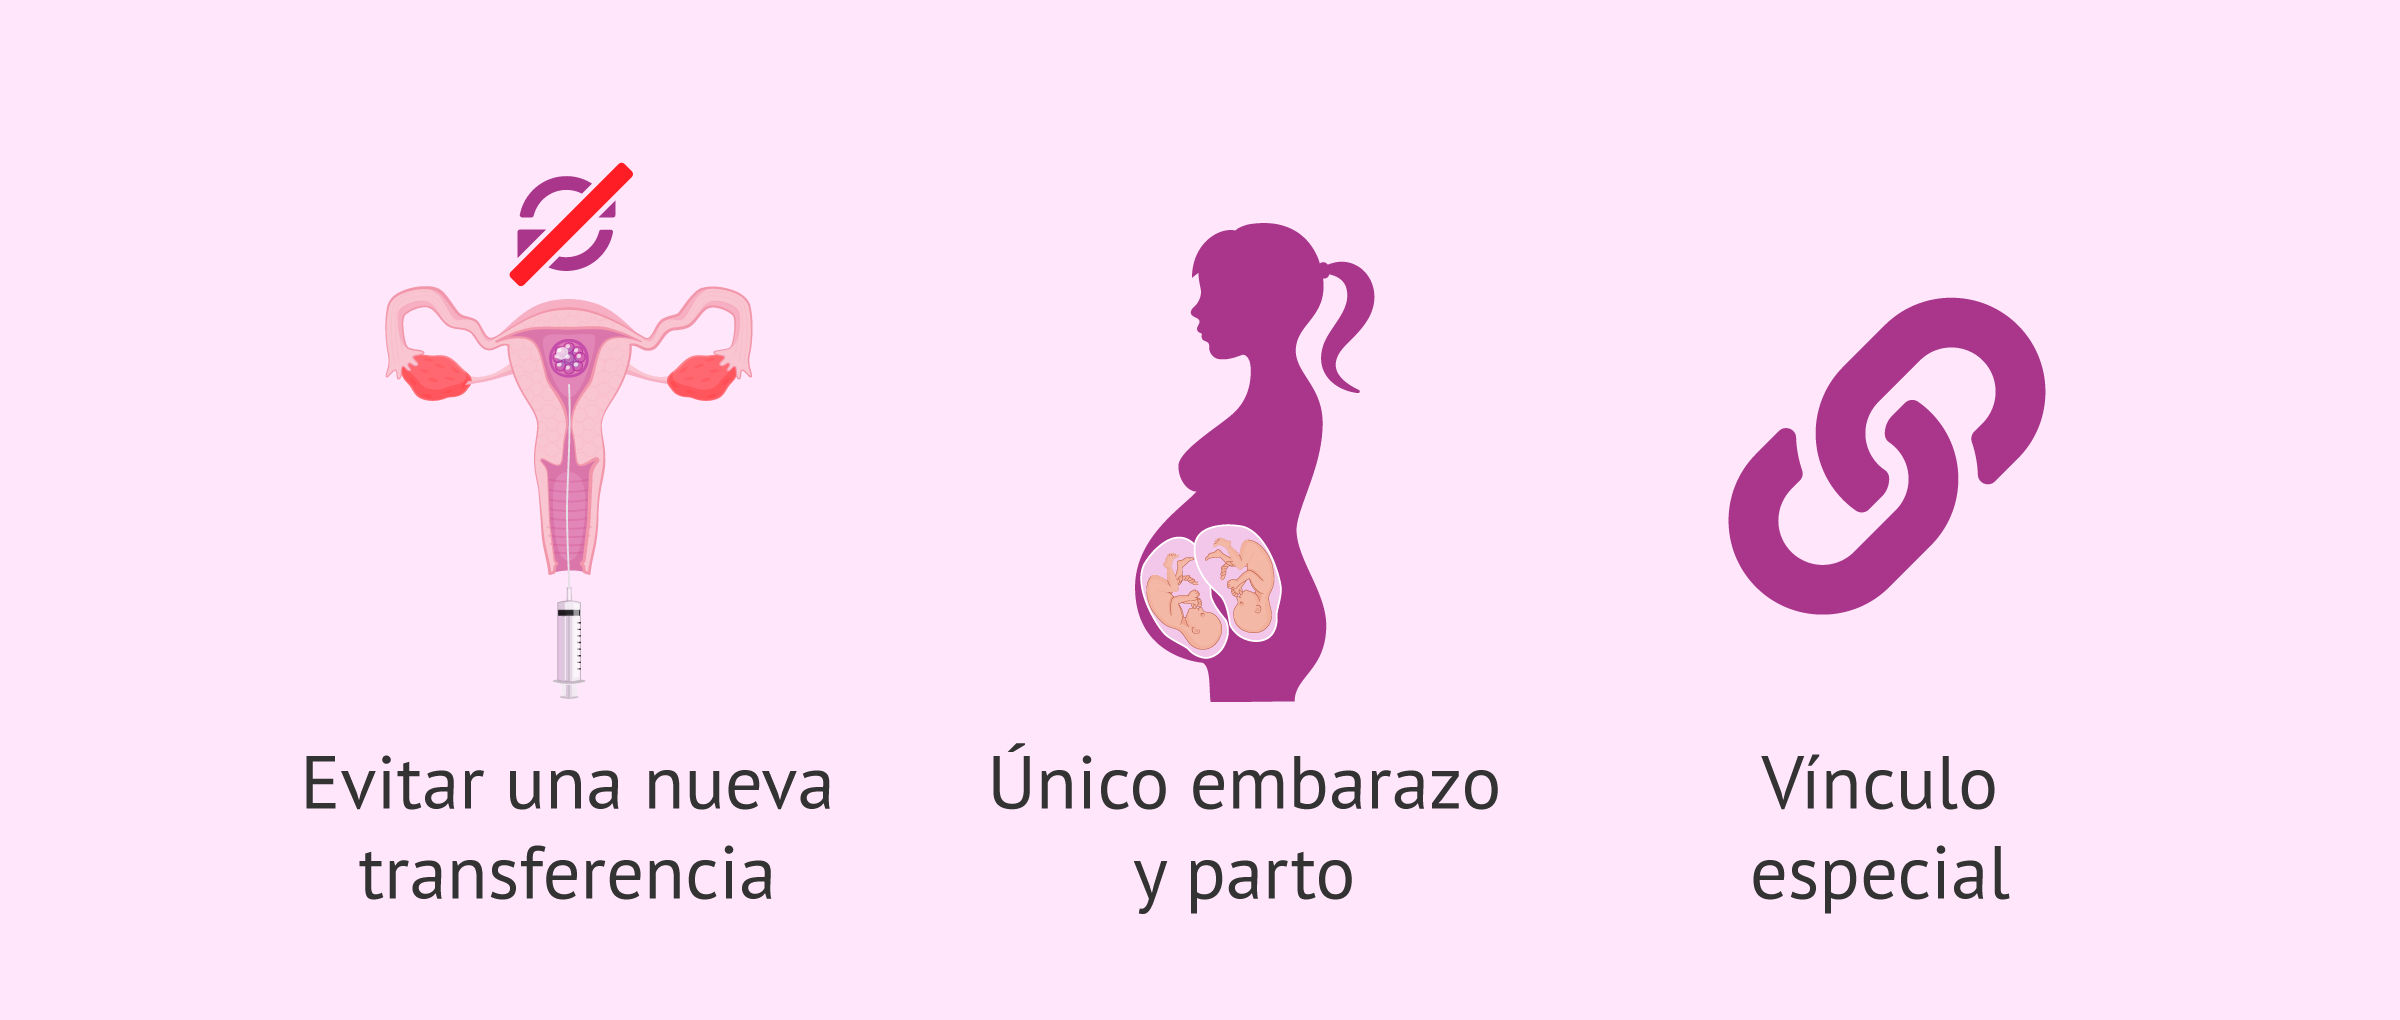 Ventajas del embarazo múltiple por reproducción asistida